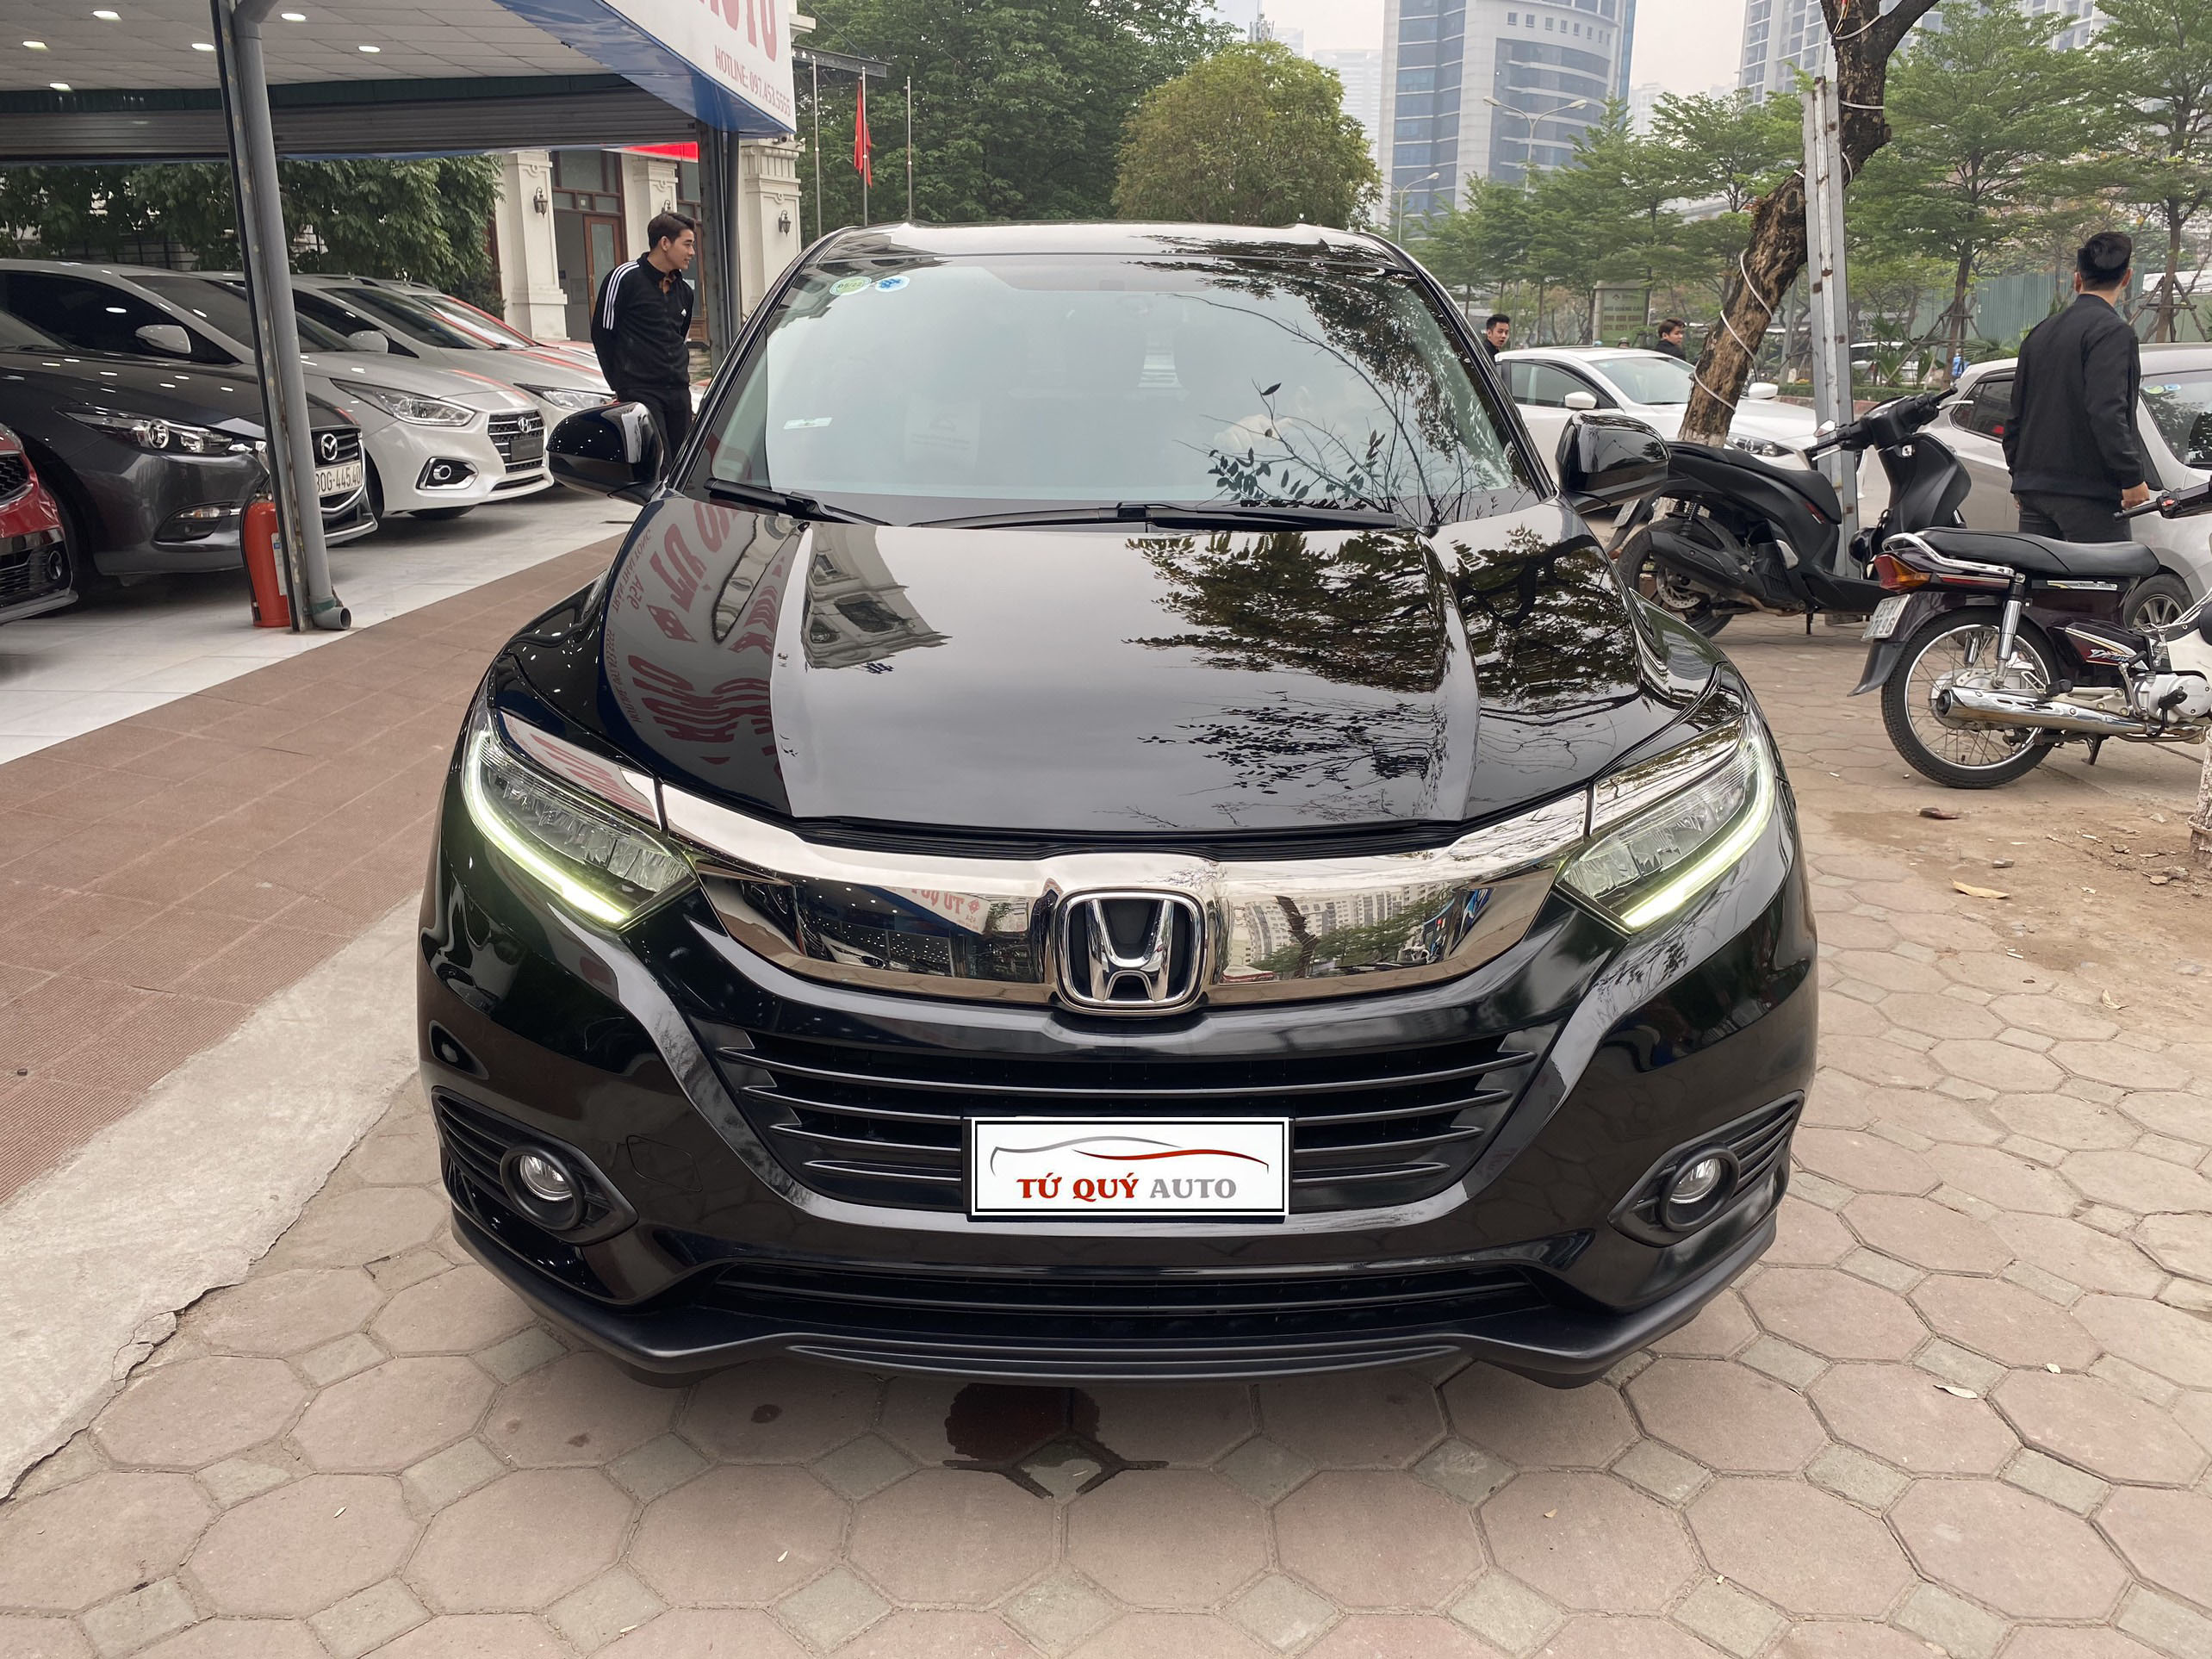 Giá xe HRV giá xe lăn bánh của Honda HRV 2019 bao nhiêu  Phước Thành  Honda 1 Đại lýshowroom xe ô tô Honda lớn nhất TP